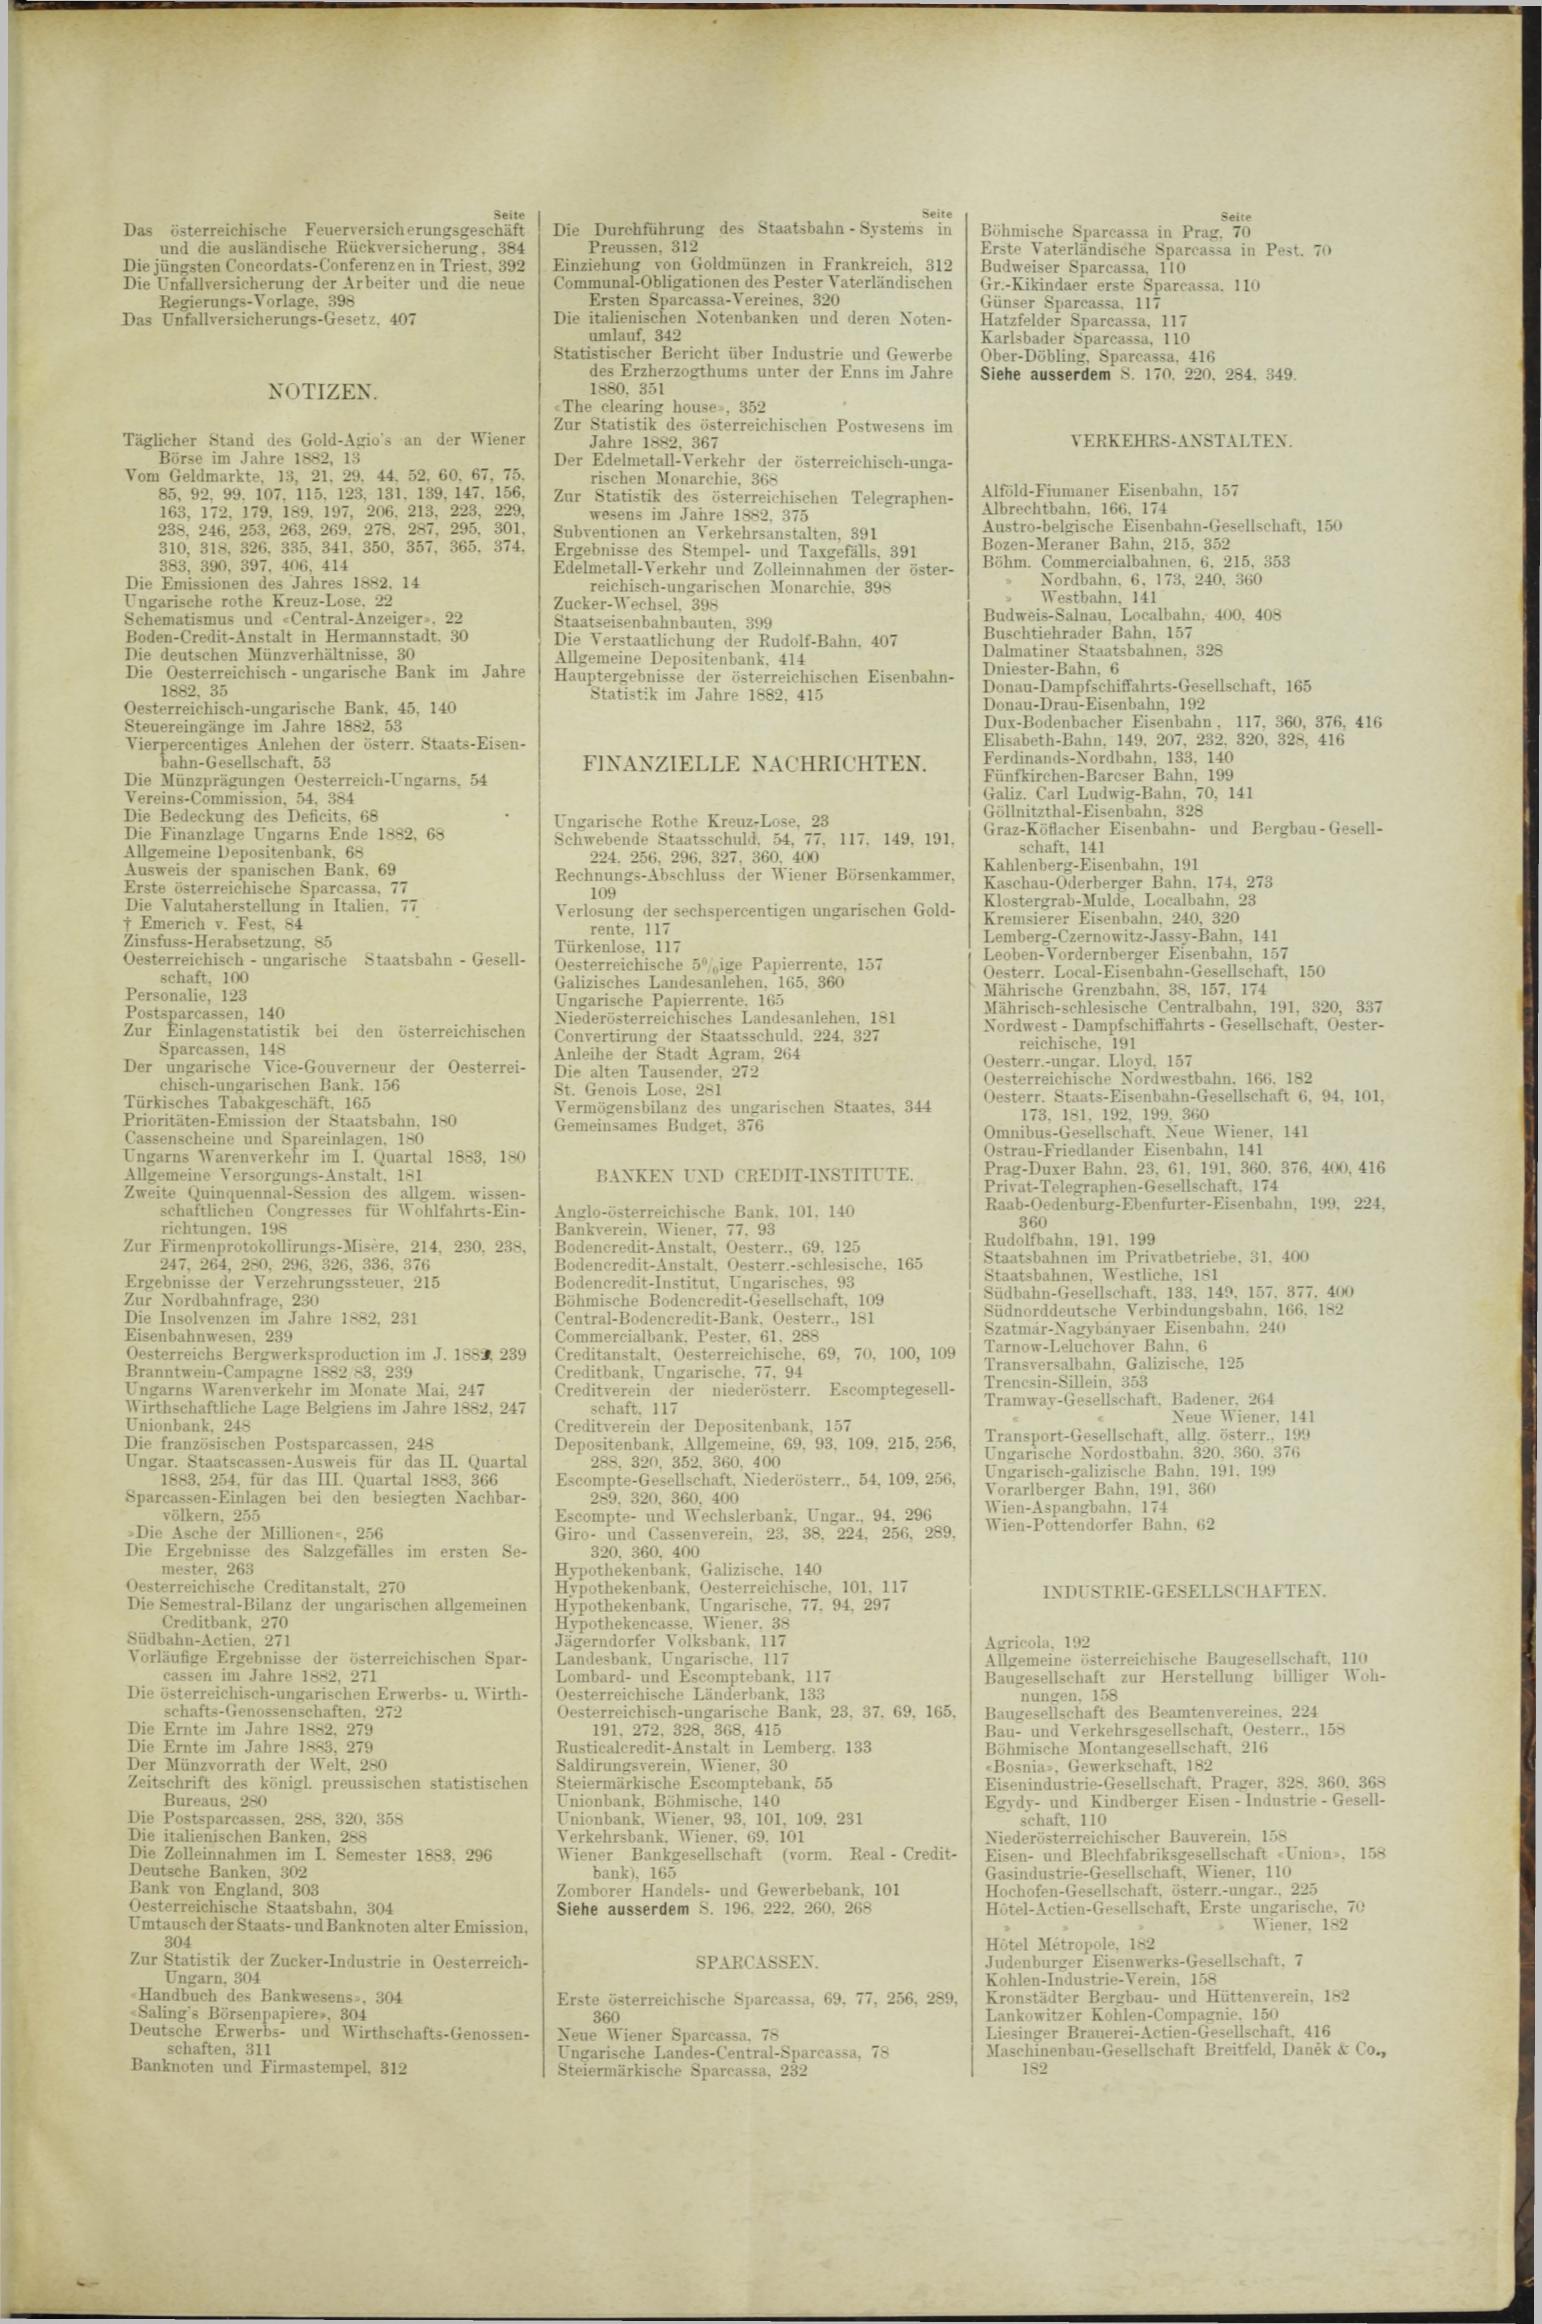 Der Tresor 26.07.1883 - Seite 11